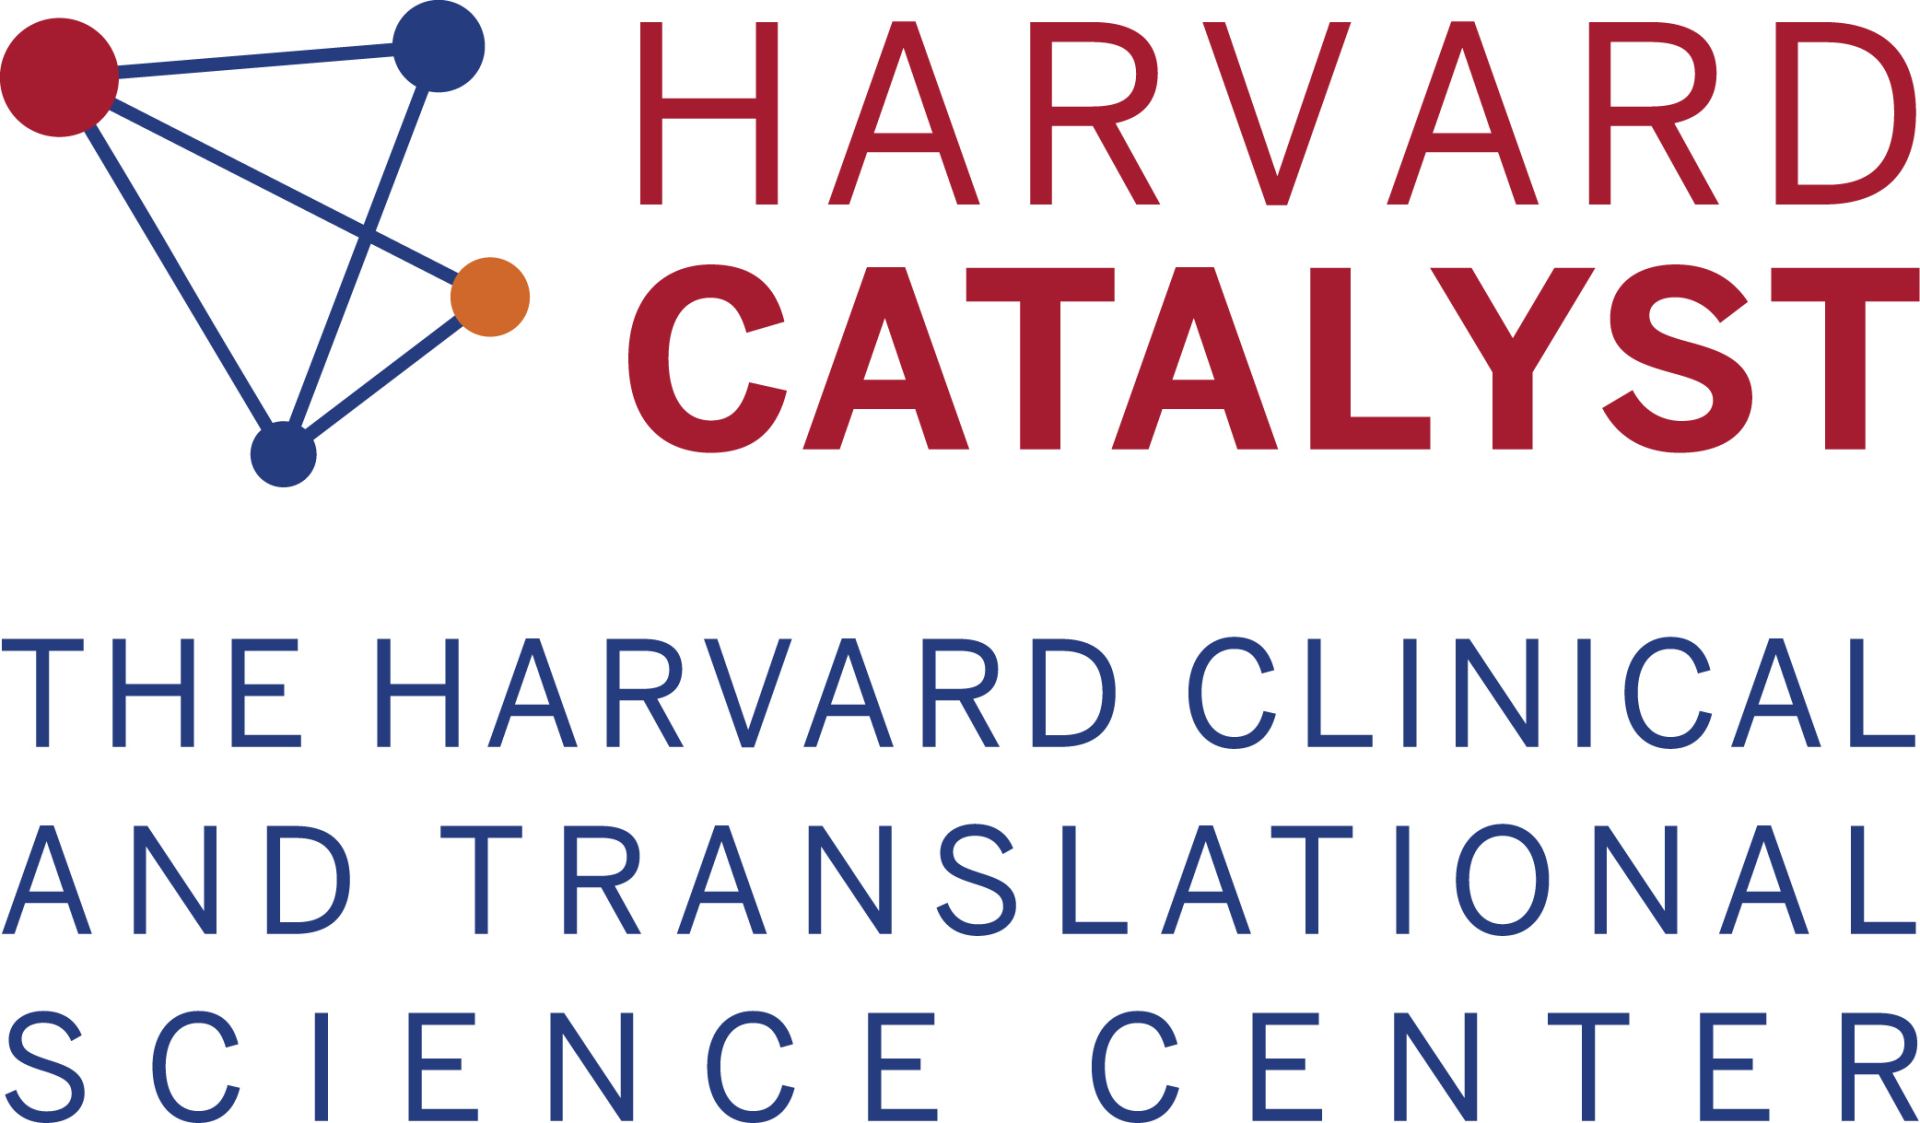 Harvard Catalyst Logo